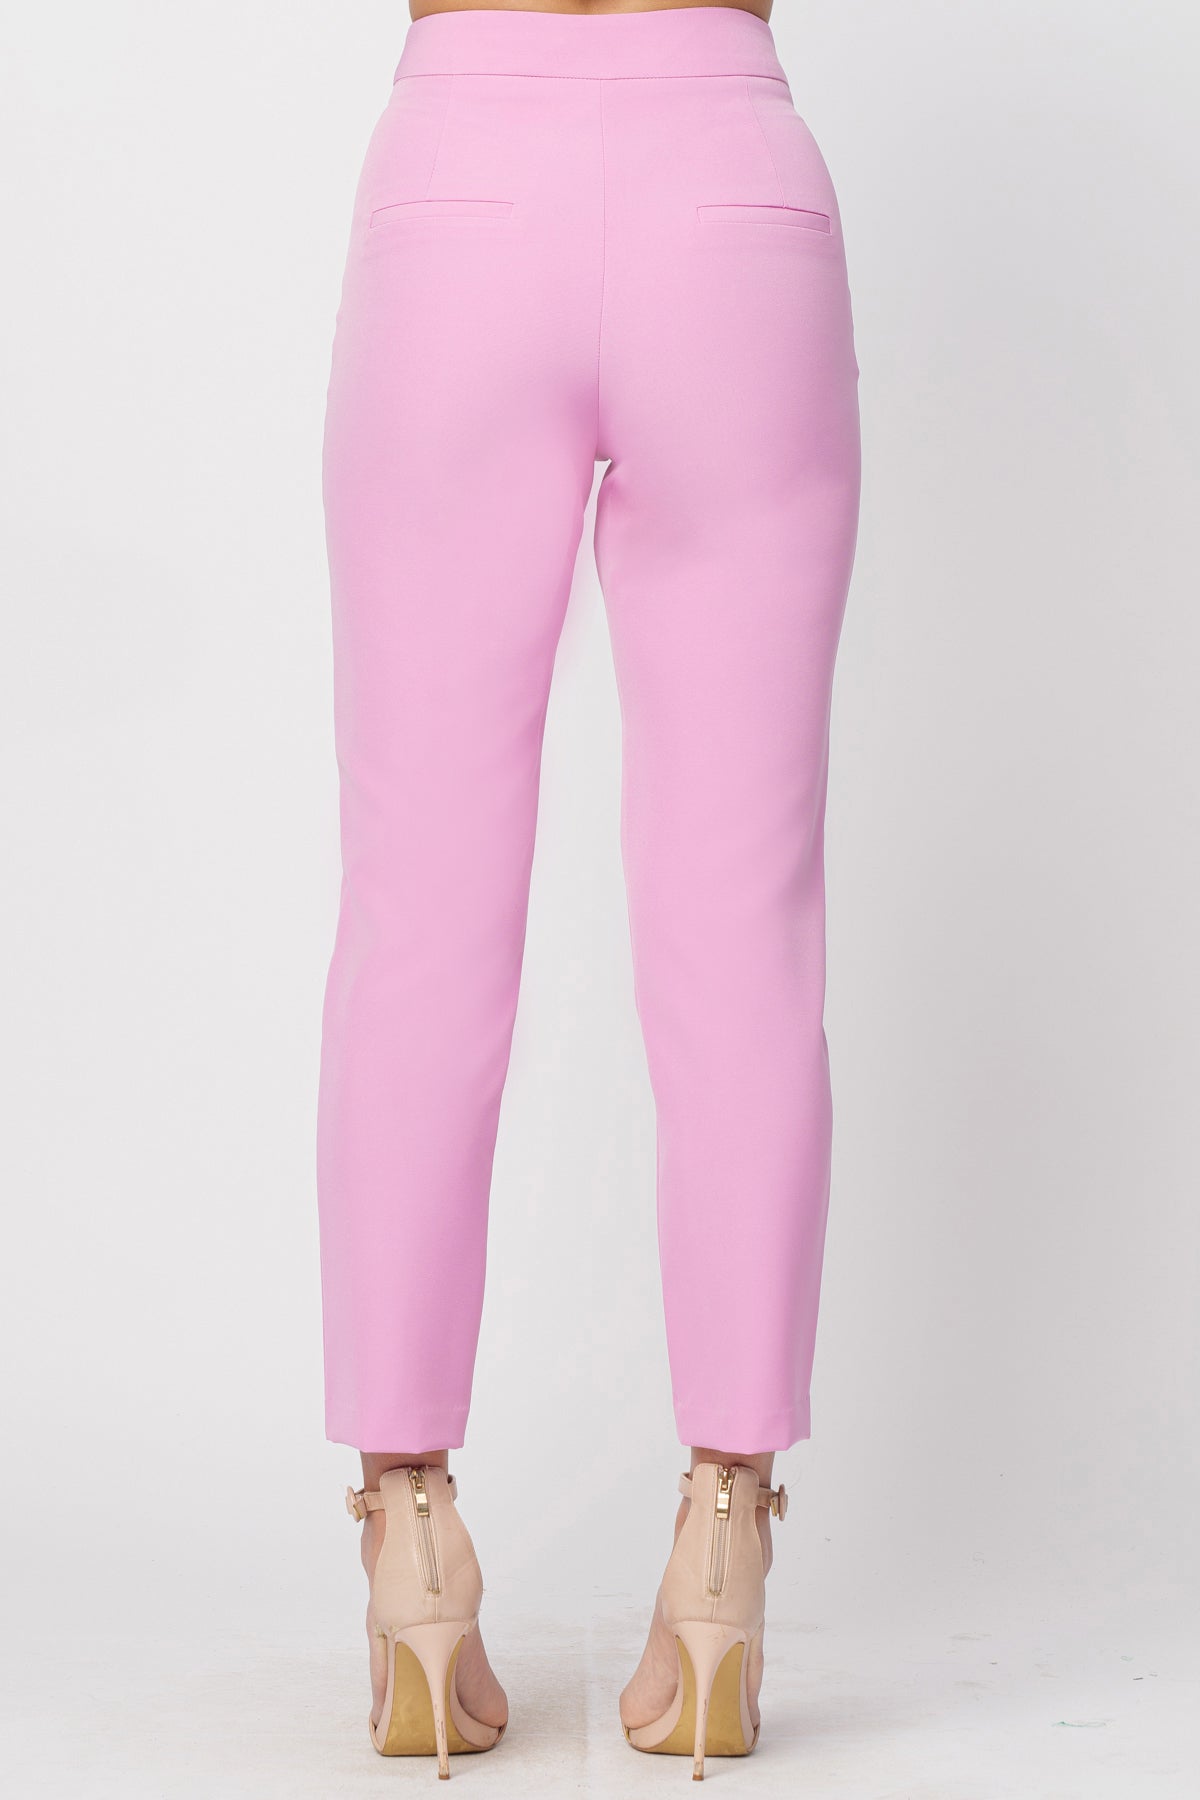 Pantalone Basic Flamingo